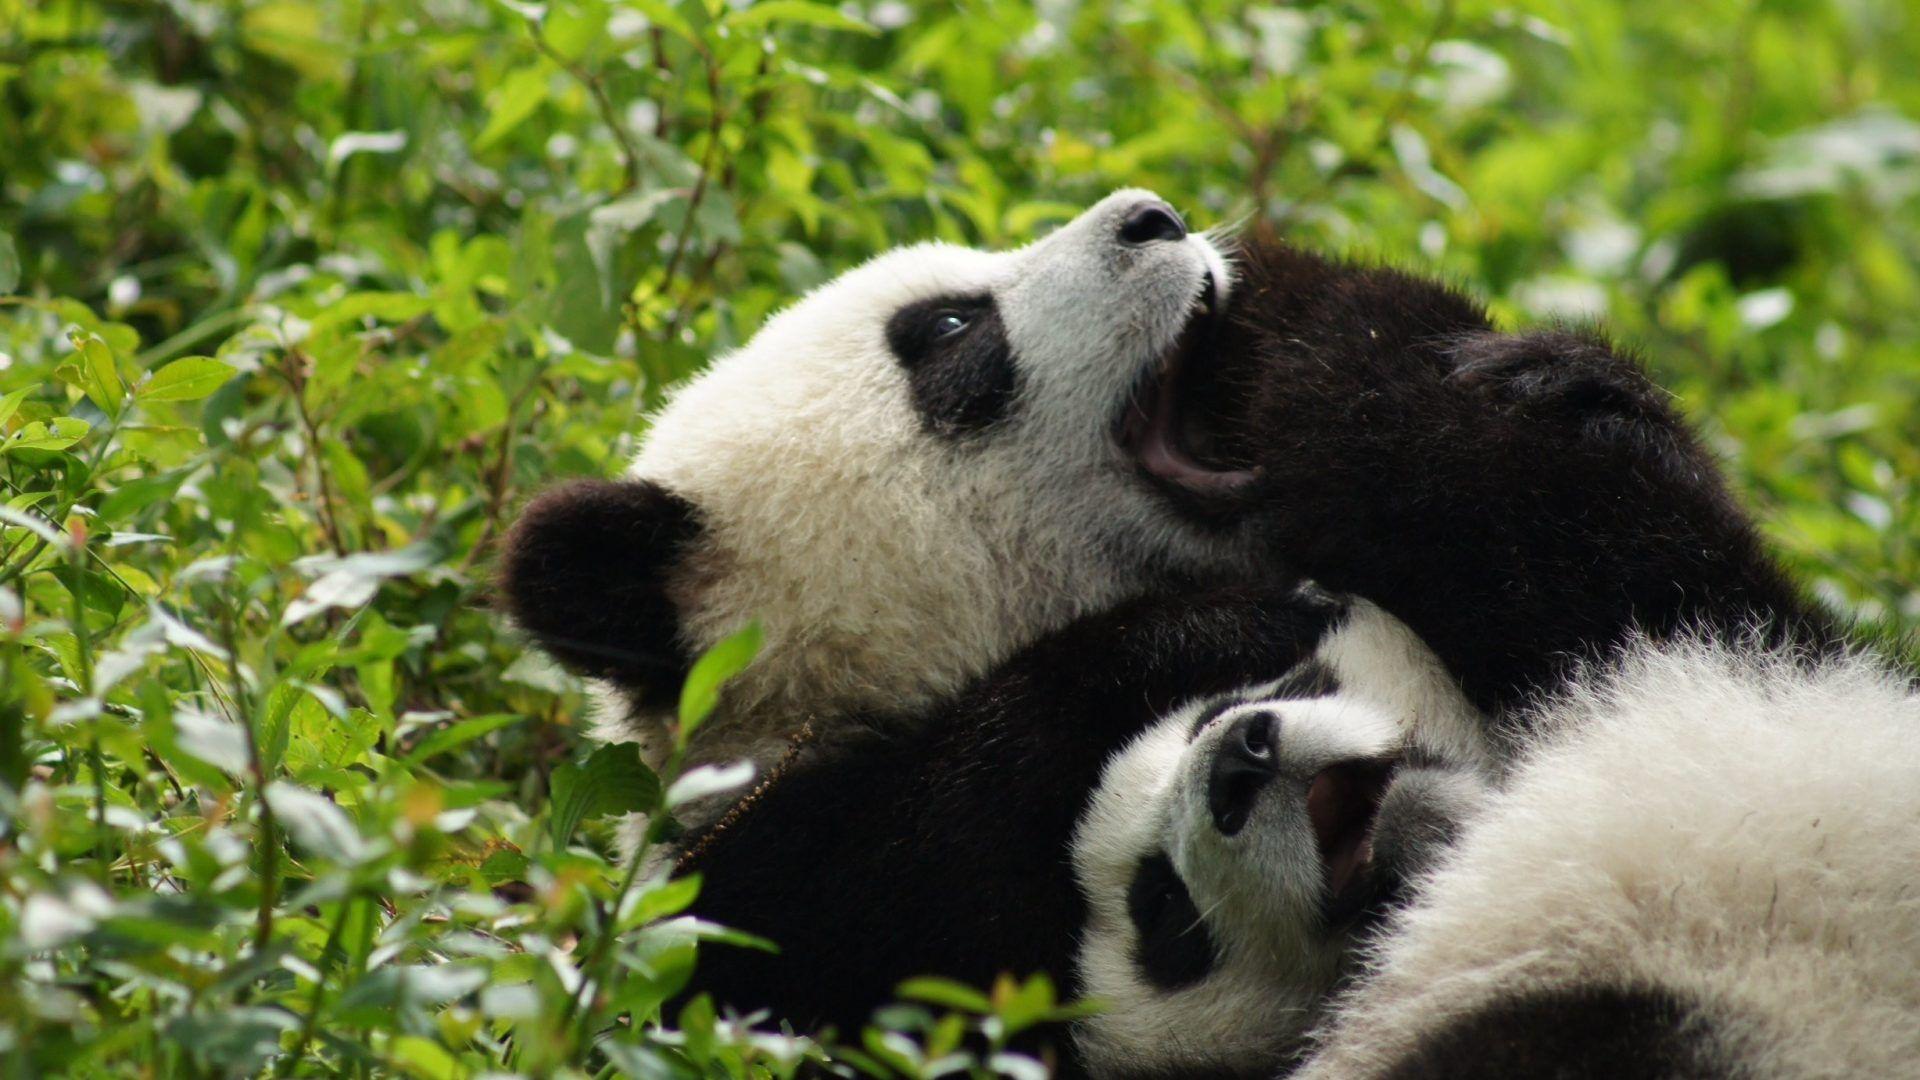 Panda Tag wallpaper: Cute Baer Pandas Panda Bears Baby